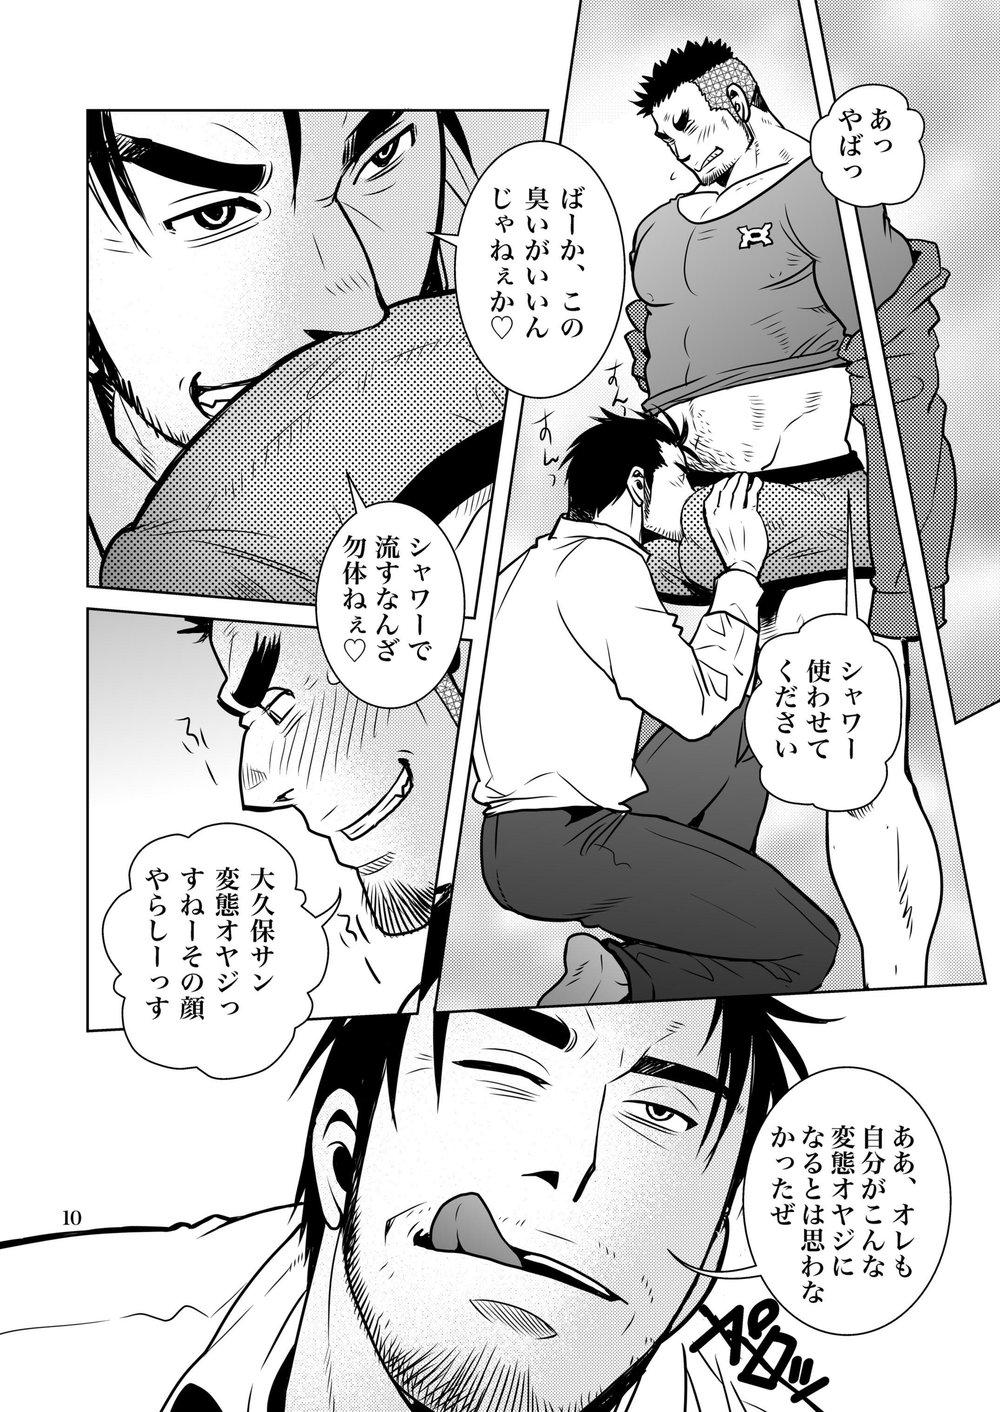 Leggings Matsu no Ma 7 - Original Young Men - Page 9